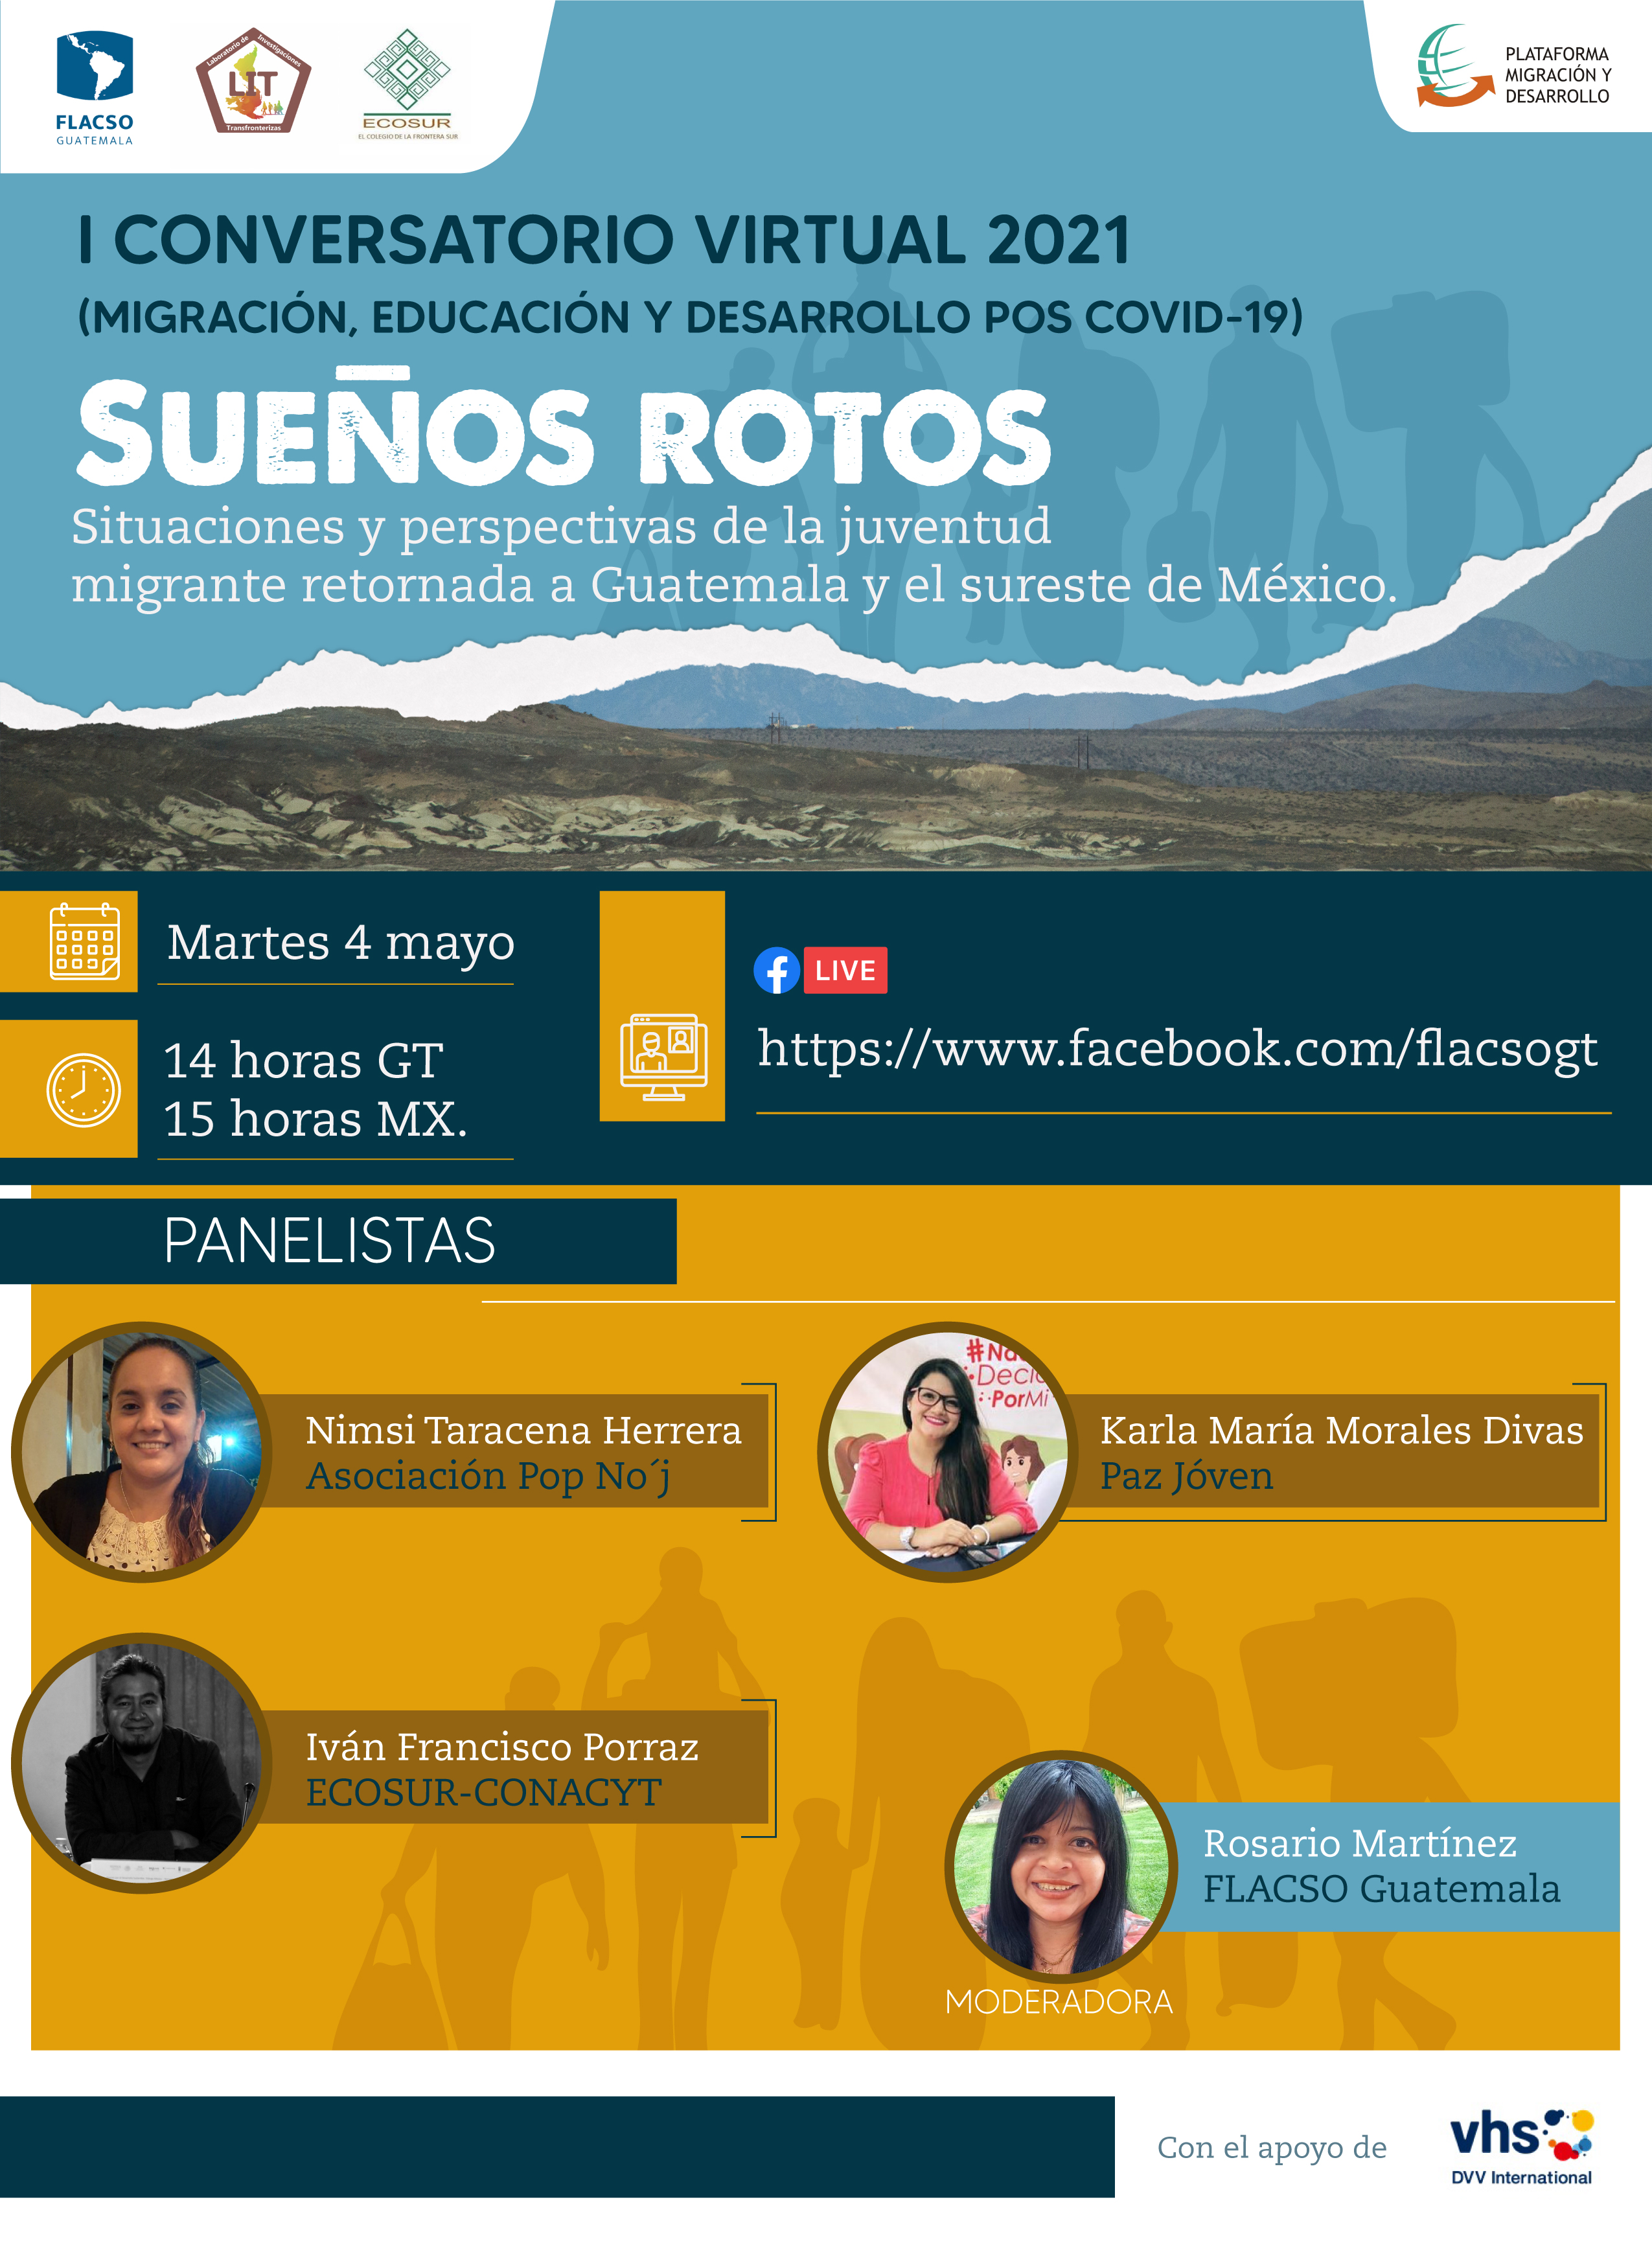 Primer conversatorio ECOSUR-Flacso Guatemala “Migración, educación y desarrollo pos COVID-19”